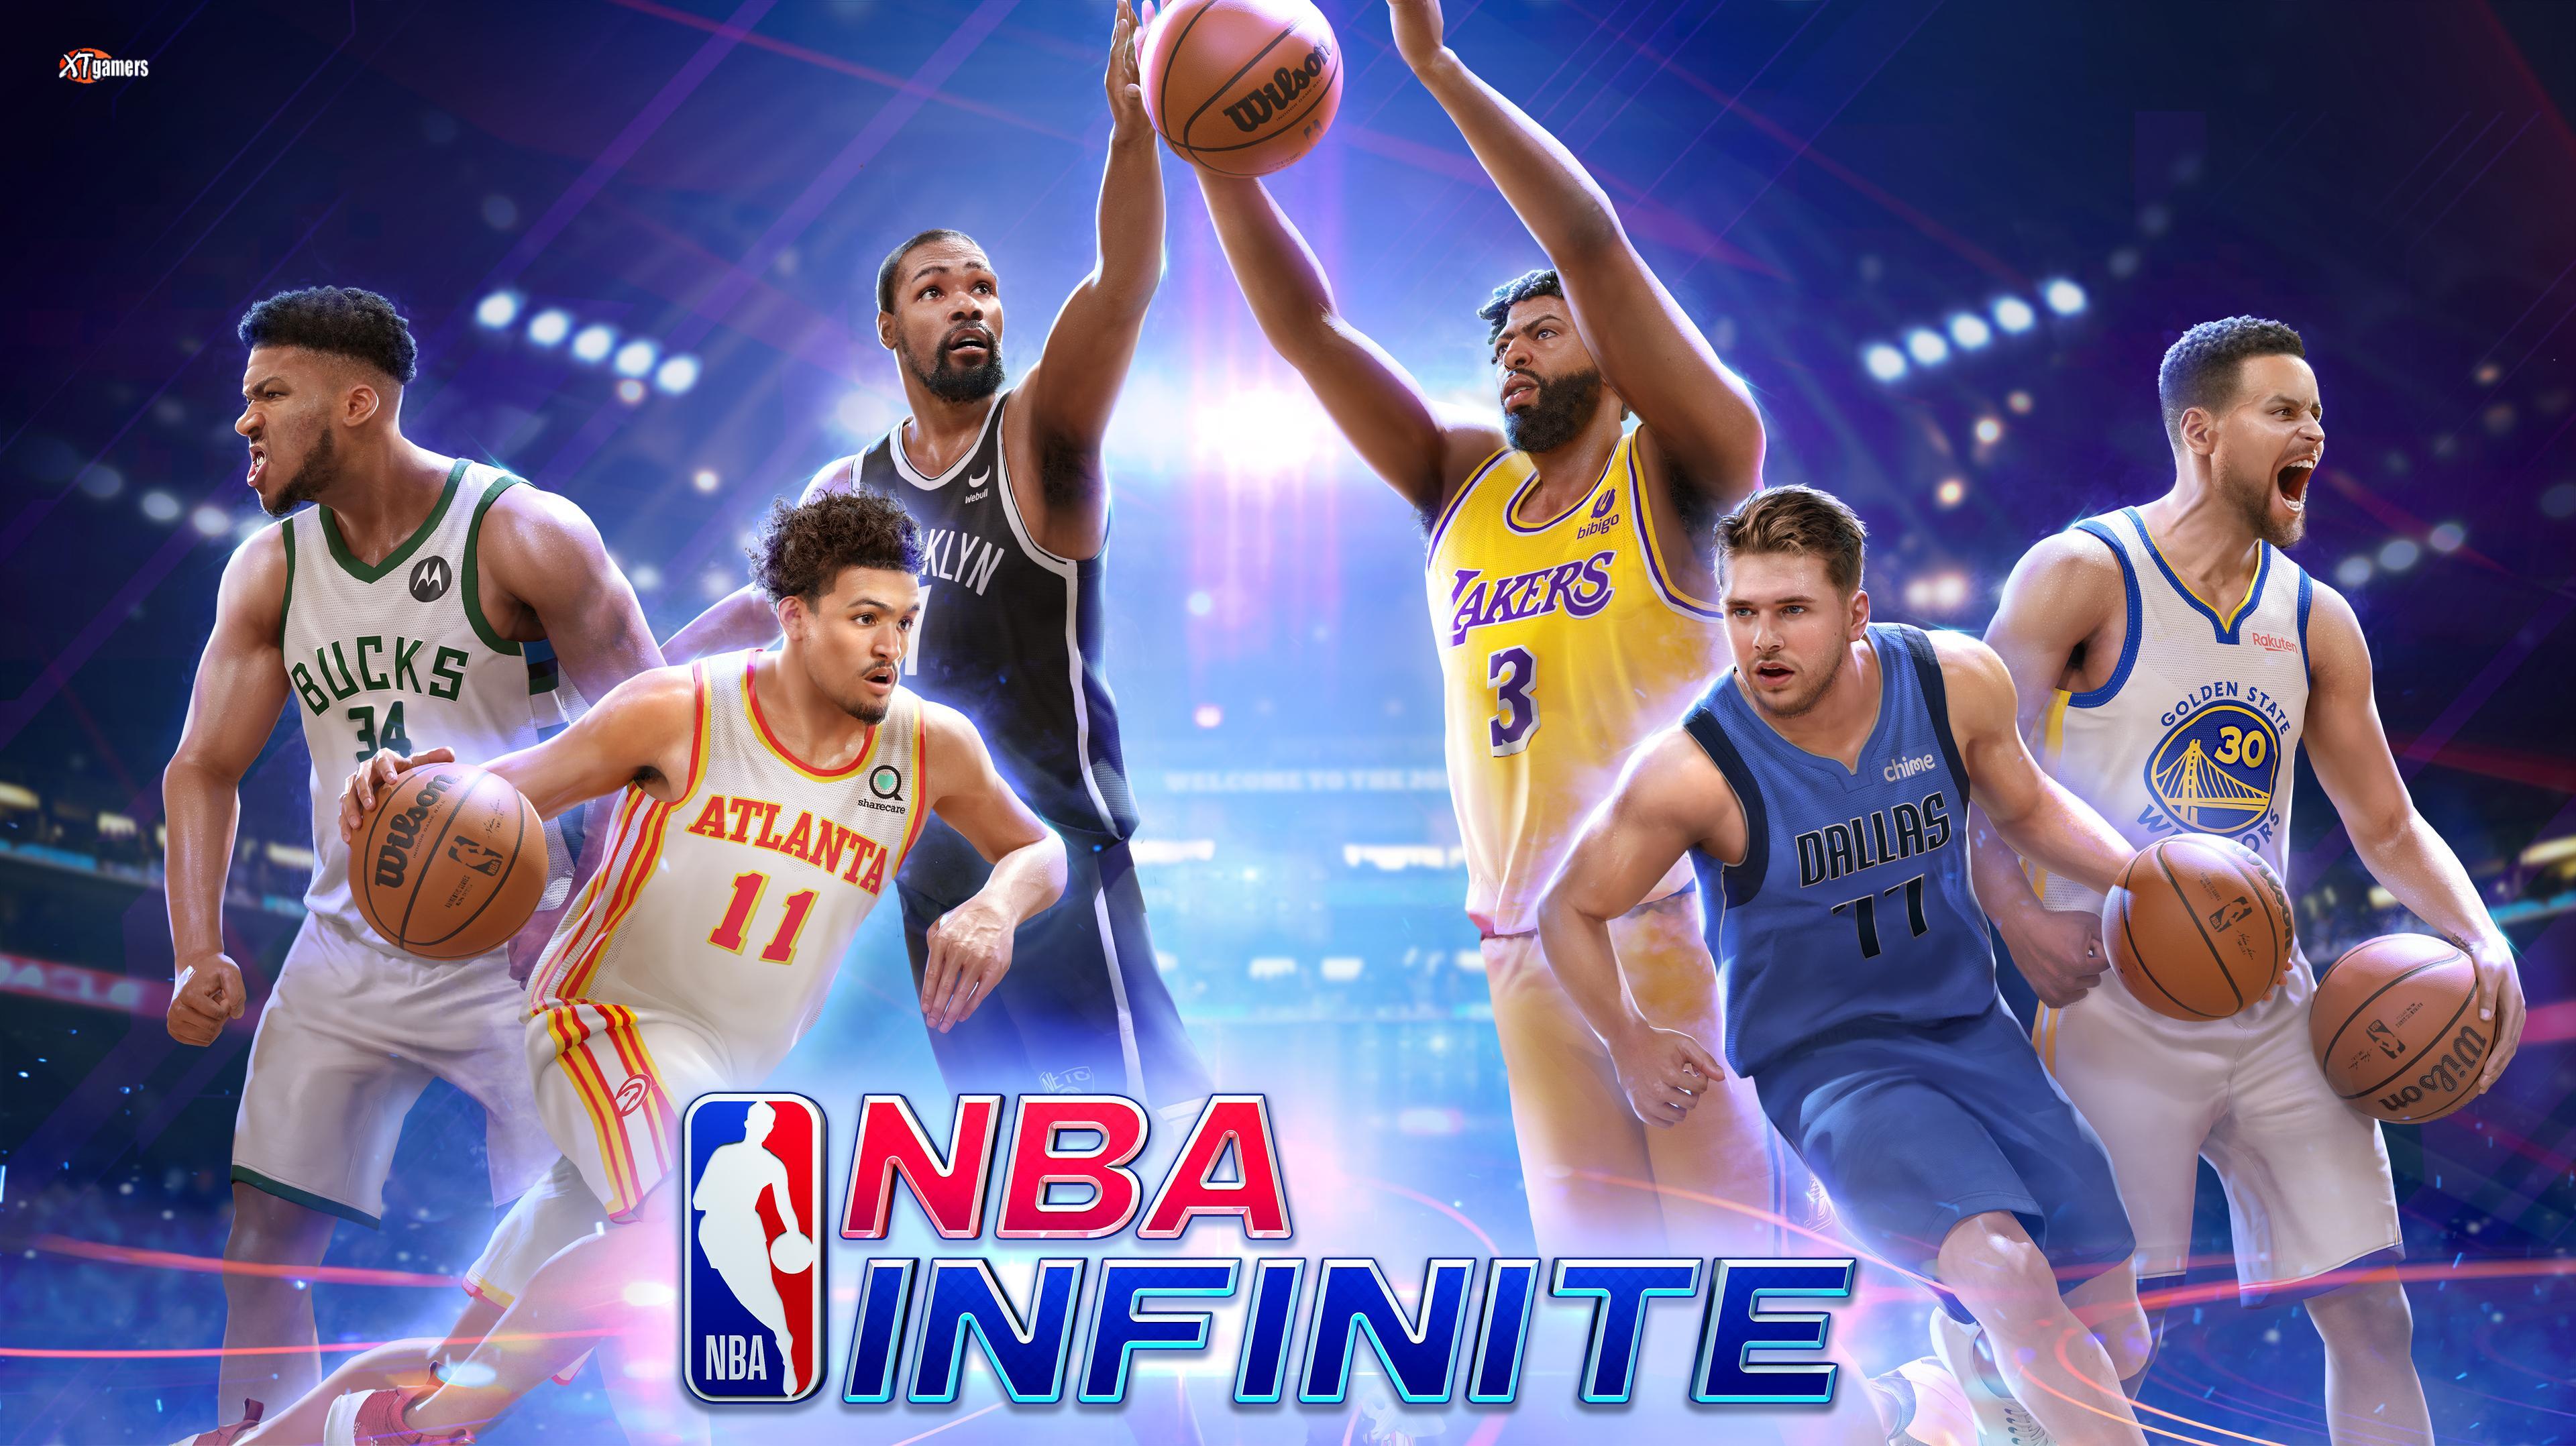 NBA Infinite теперь доступна по всему миру на Android и iOS